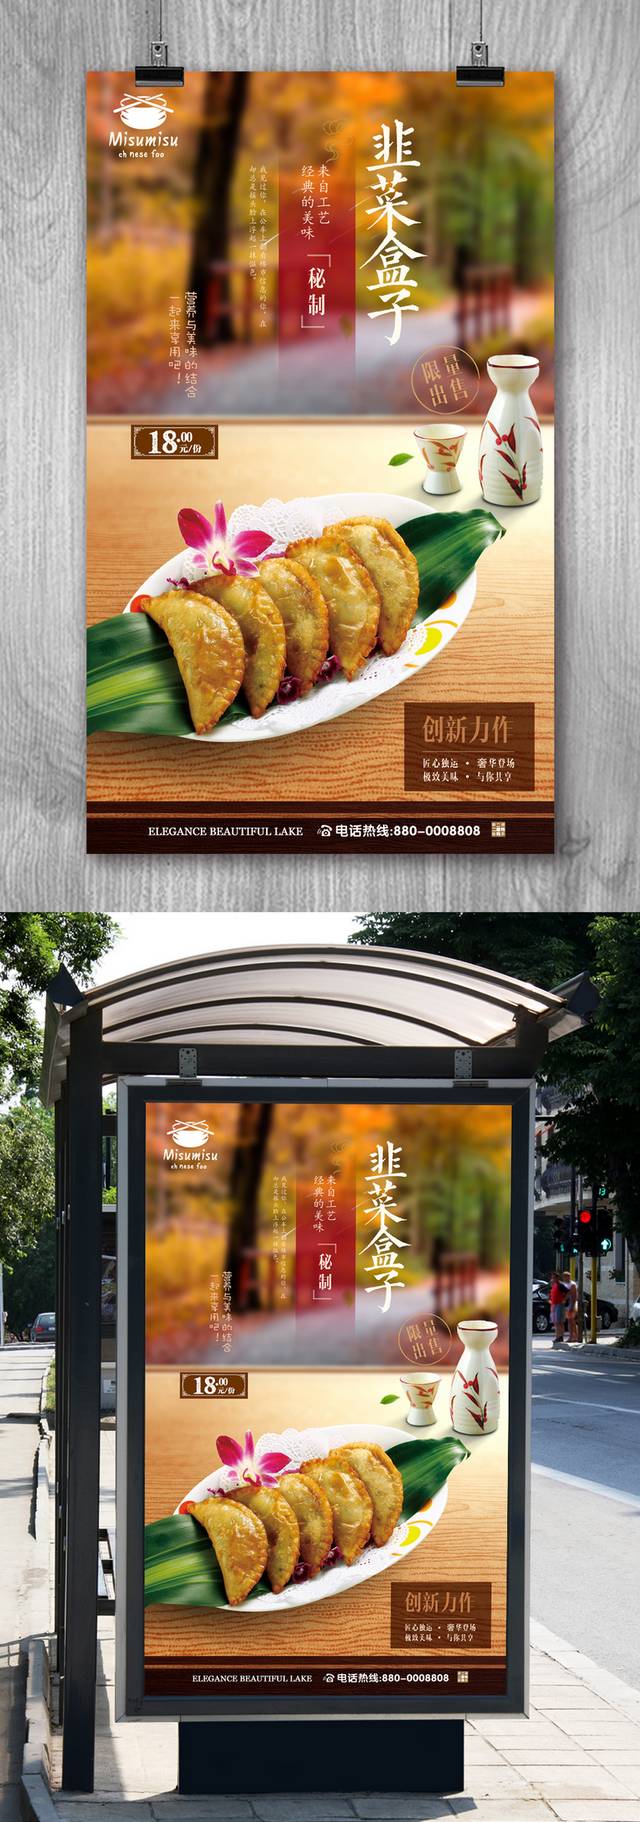 古典韭菜盒子海报设计psd